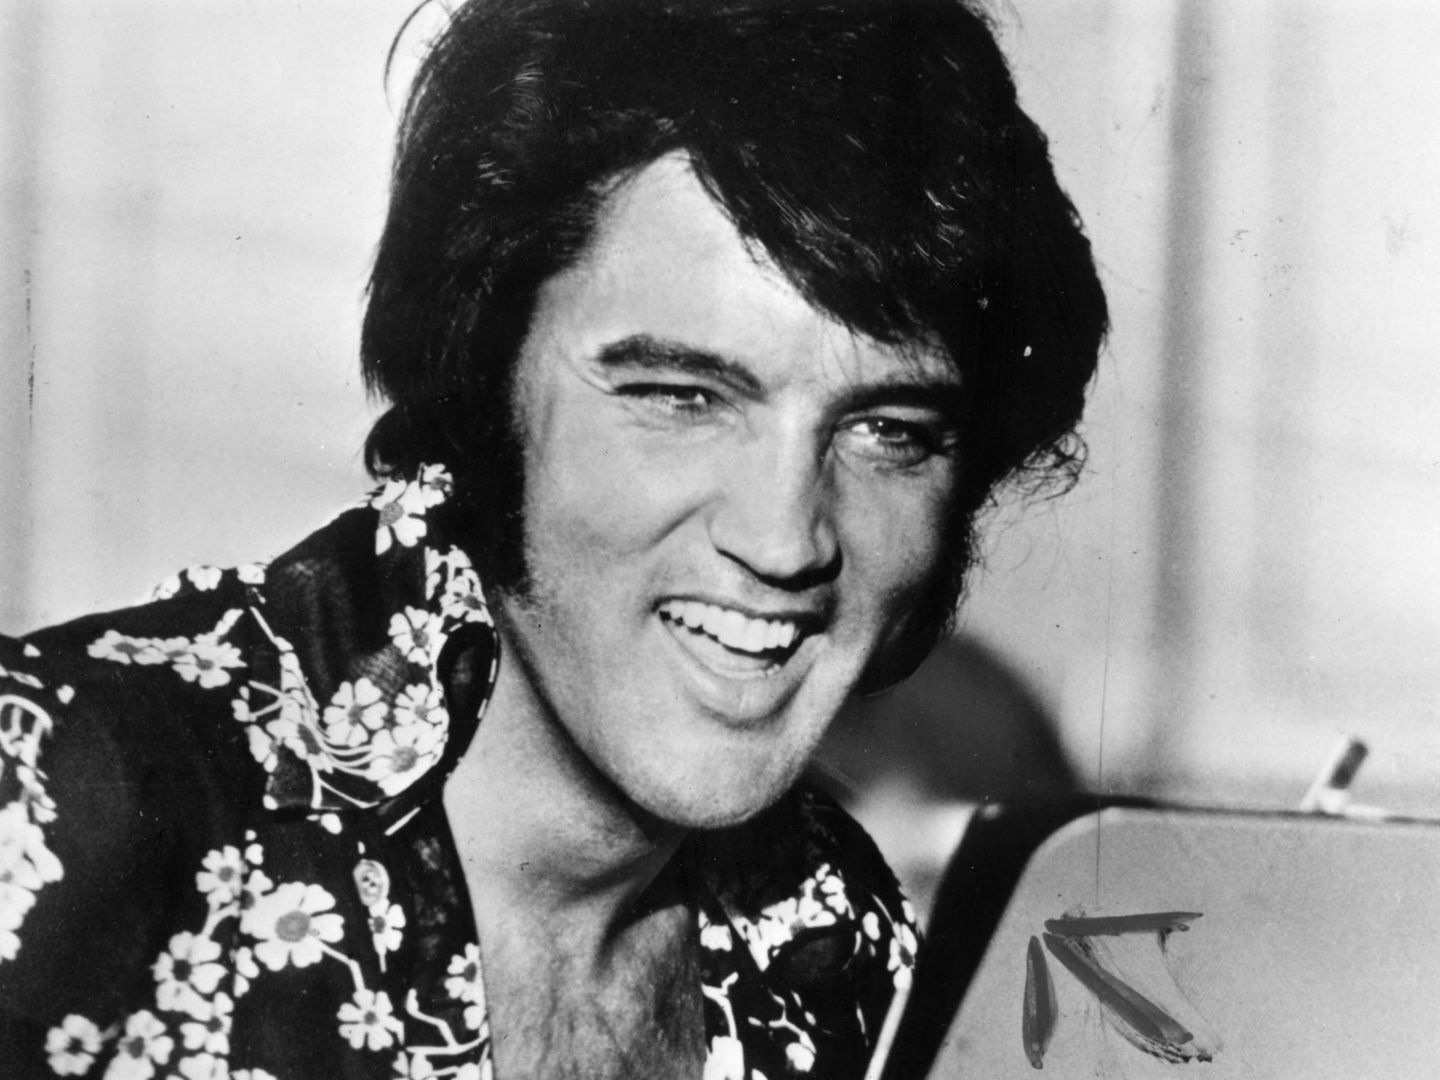  Elvis Presley. (Getty)